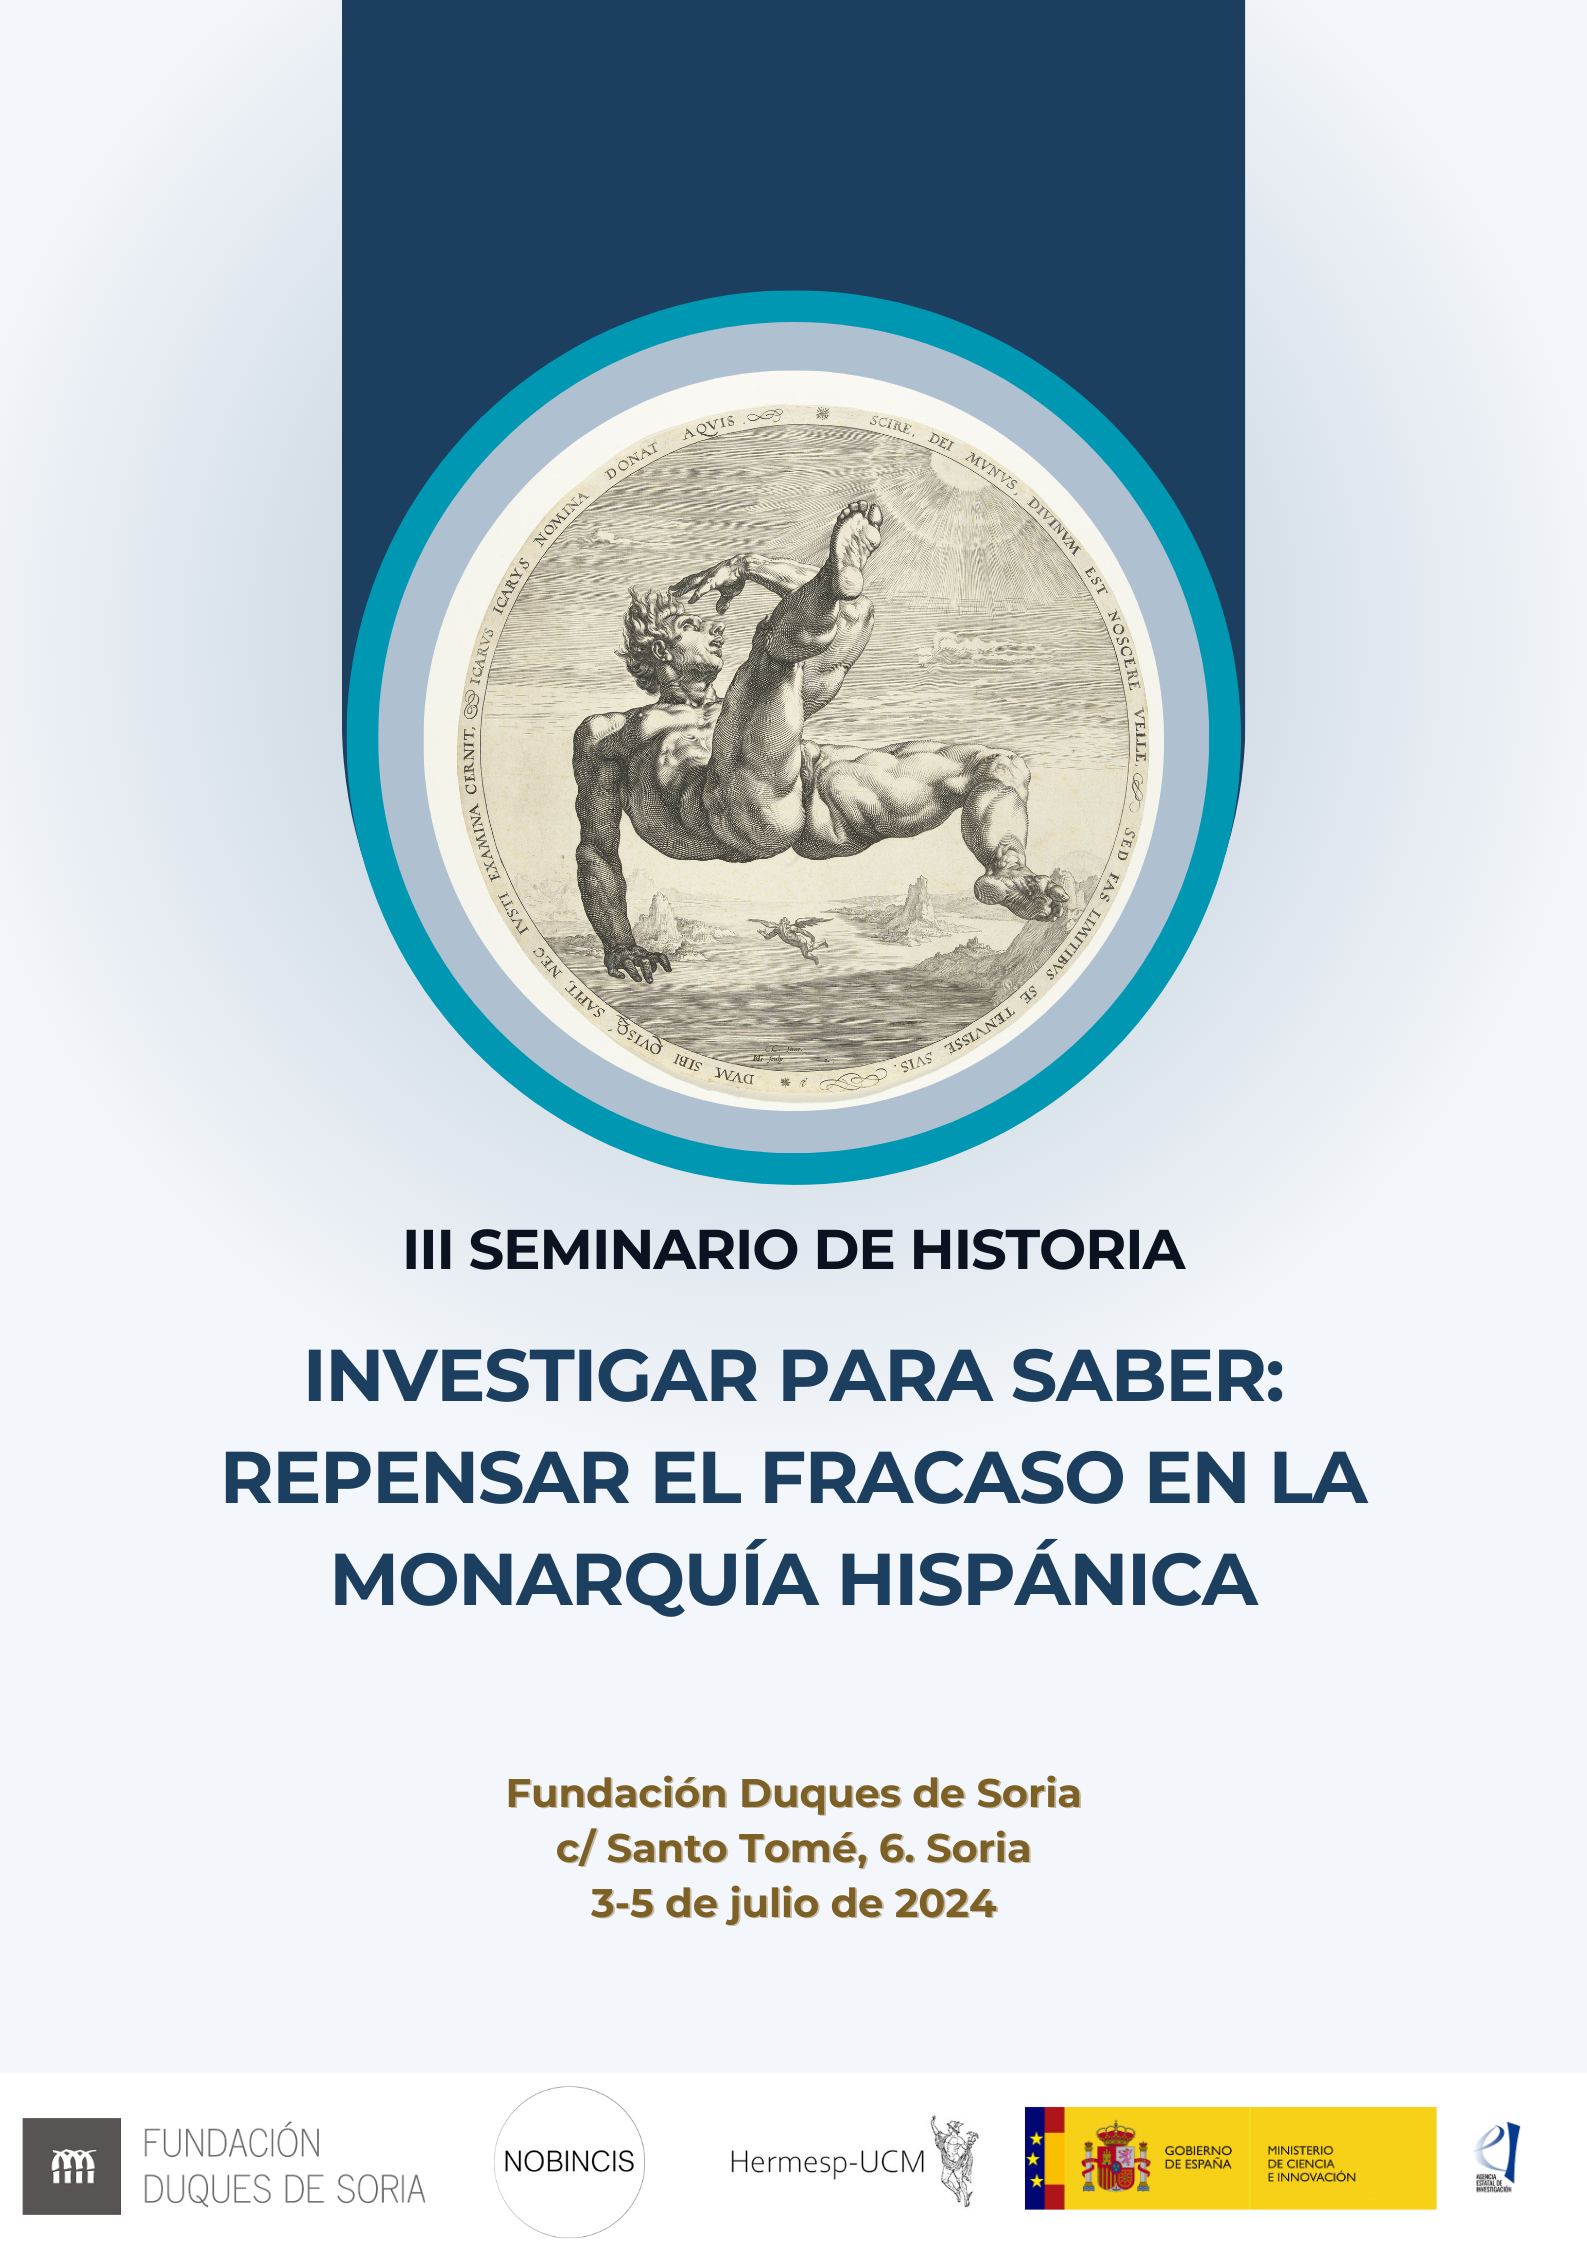 III Seminario de Historia "Investigar para Saber: repensar el fracaso en la Monarquía Hispánica"